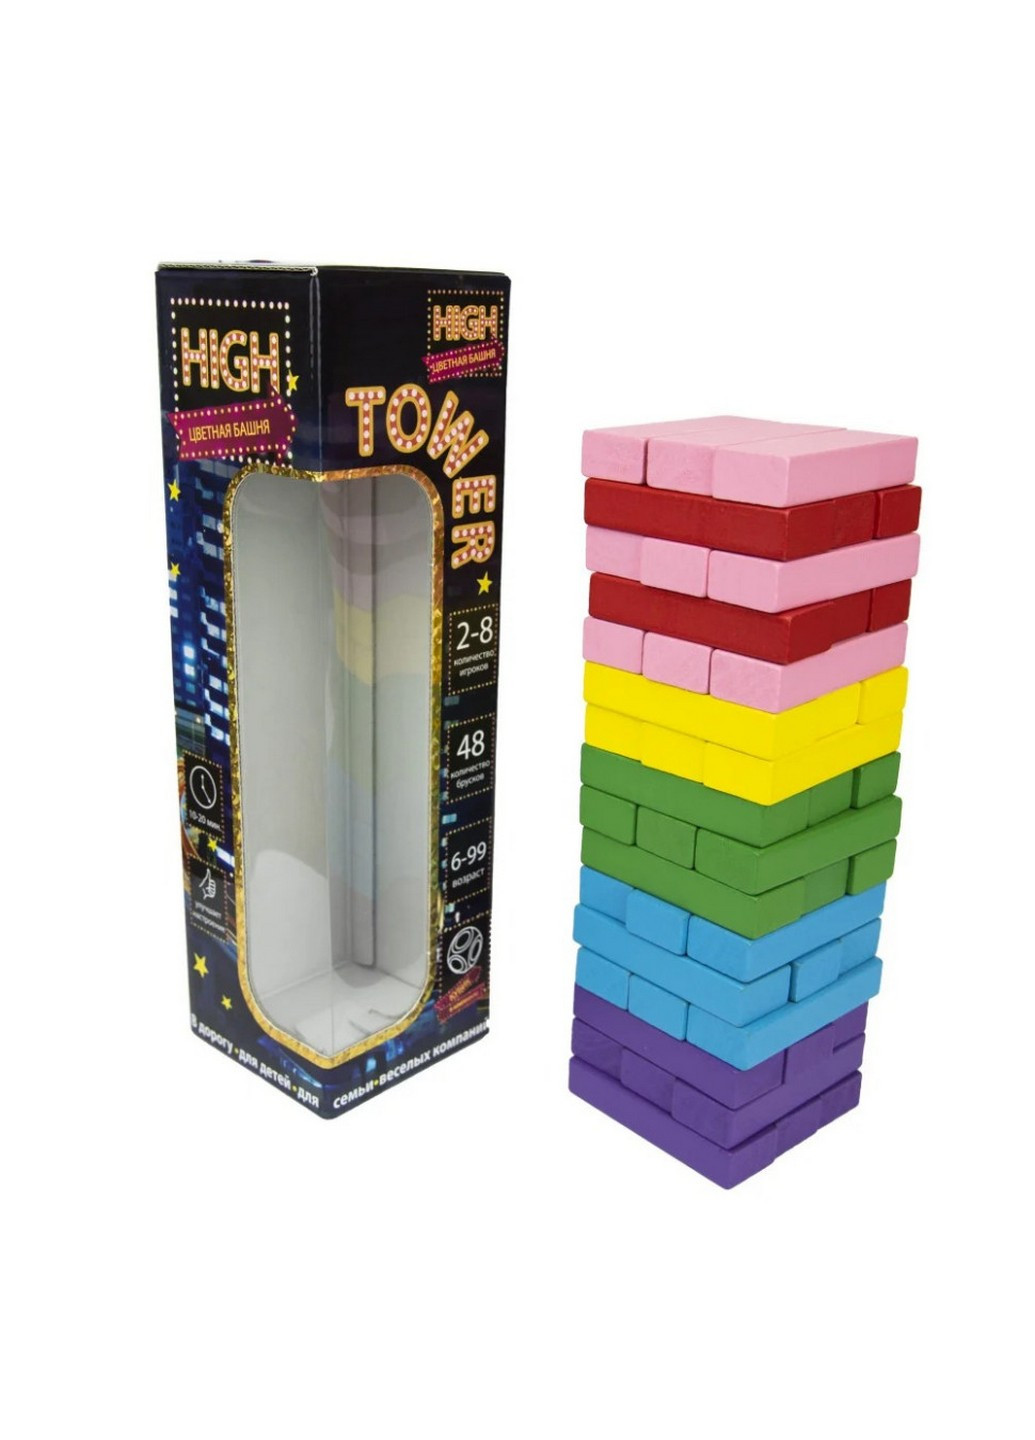 Развлекательная игра "High Tower"Дженга рус 28х8,2х8,2 см Strateg (259245422)